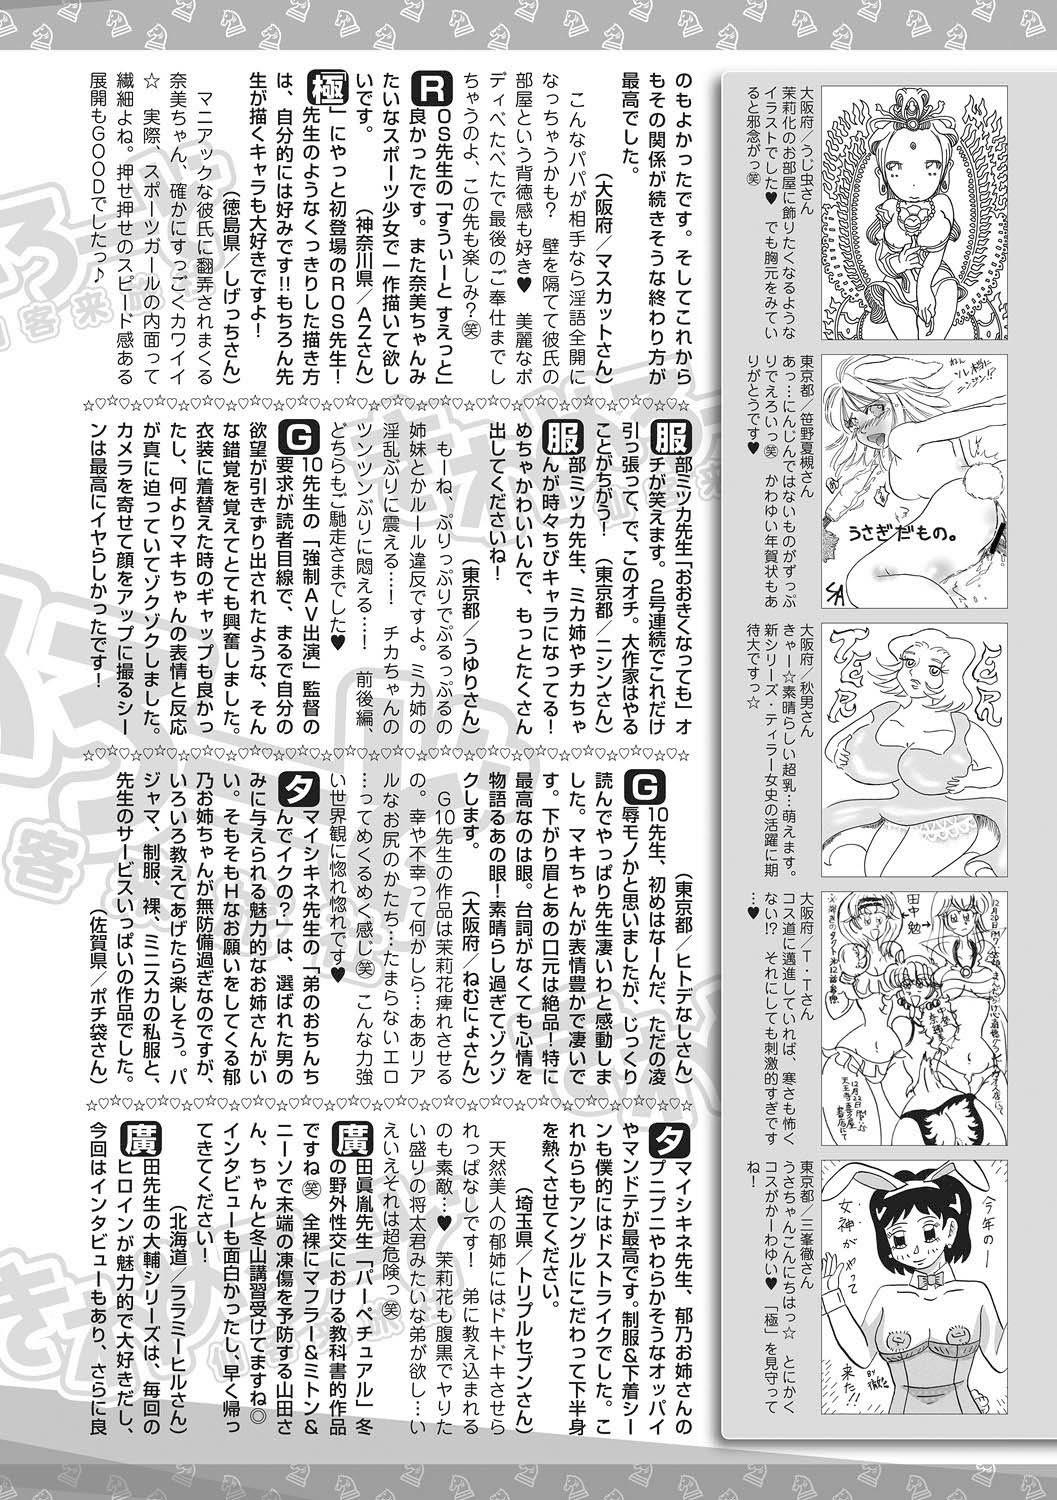 Bishoujo Kakumei KIWAME 2011-04 Vol. 13 194